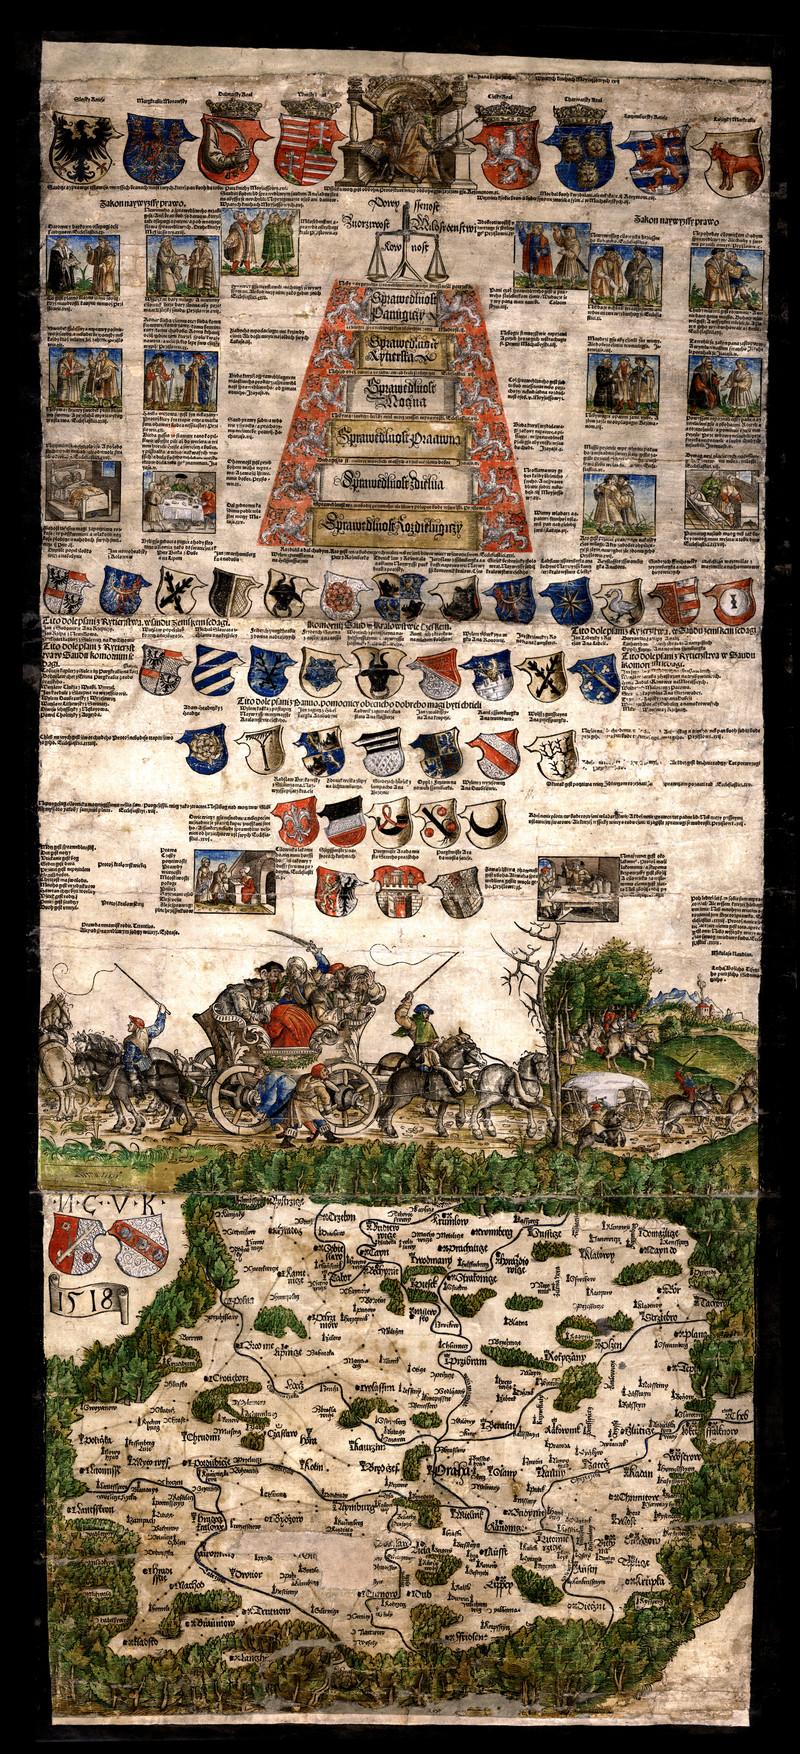 KLAUDYÁN, Mikuláš: [Ilustrovaný jednolist s mapou Čech], 1518 (originál je uložen v SOA Litoměřice; zdroj: https://cs.wikipedia.org/wiki/Klaudiánova_mapa#/media/File:1518bohemiamap.jpg)